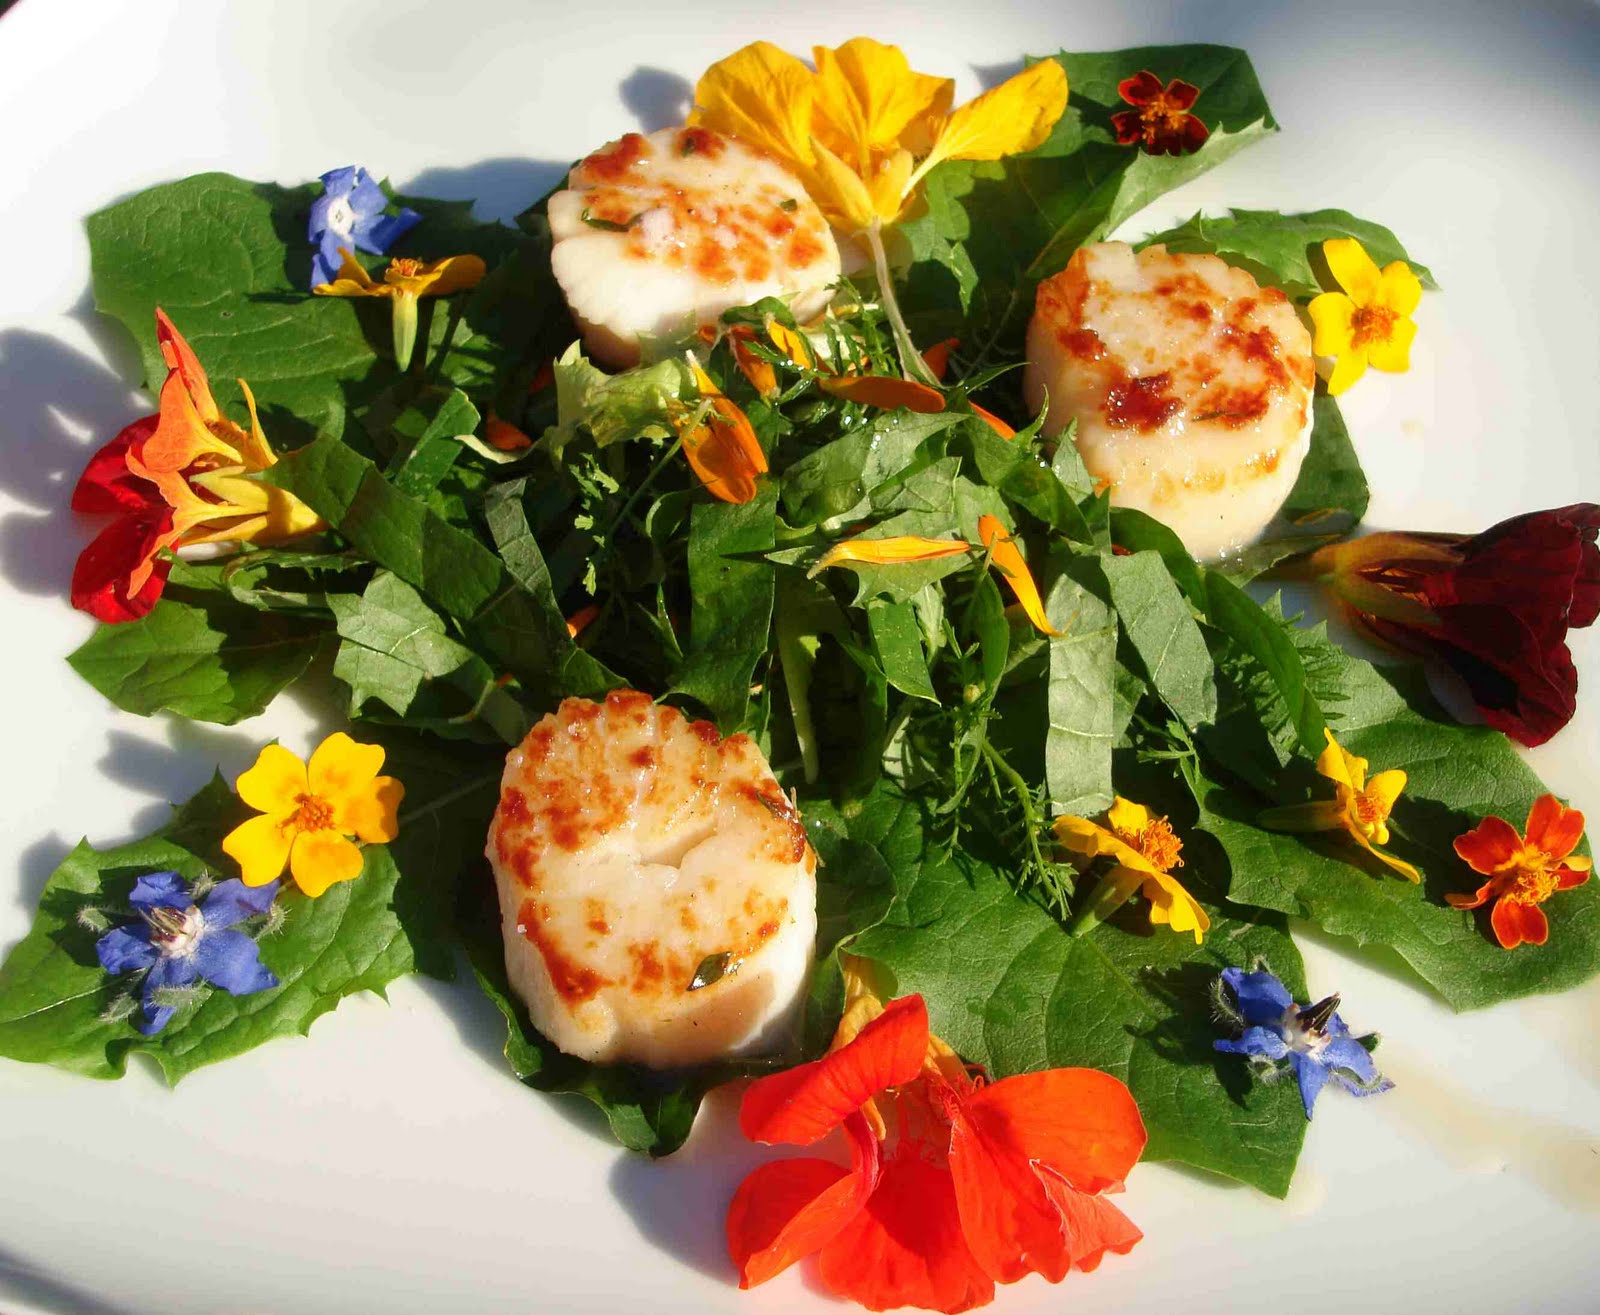 bushcooks kitchen: Jakobsmuscheln und bunter Blütensalat